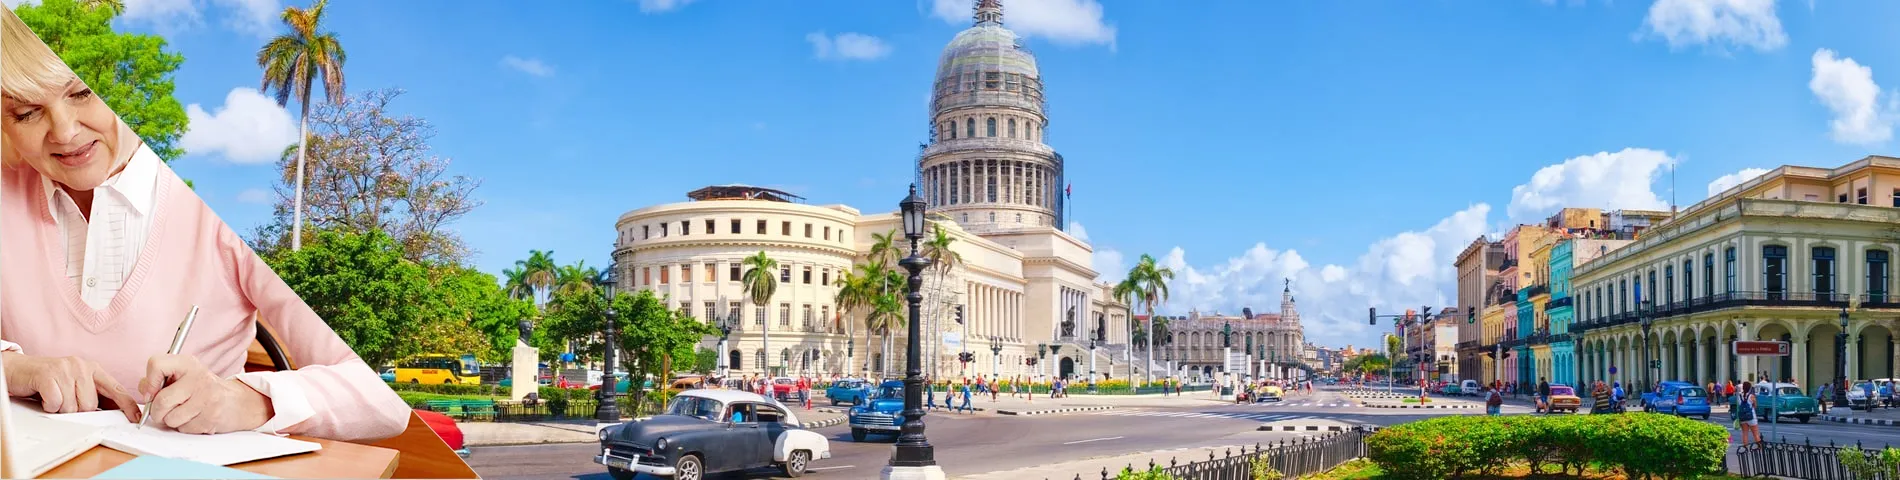 Гавана - Курси для людей зрілого віку (50+)